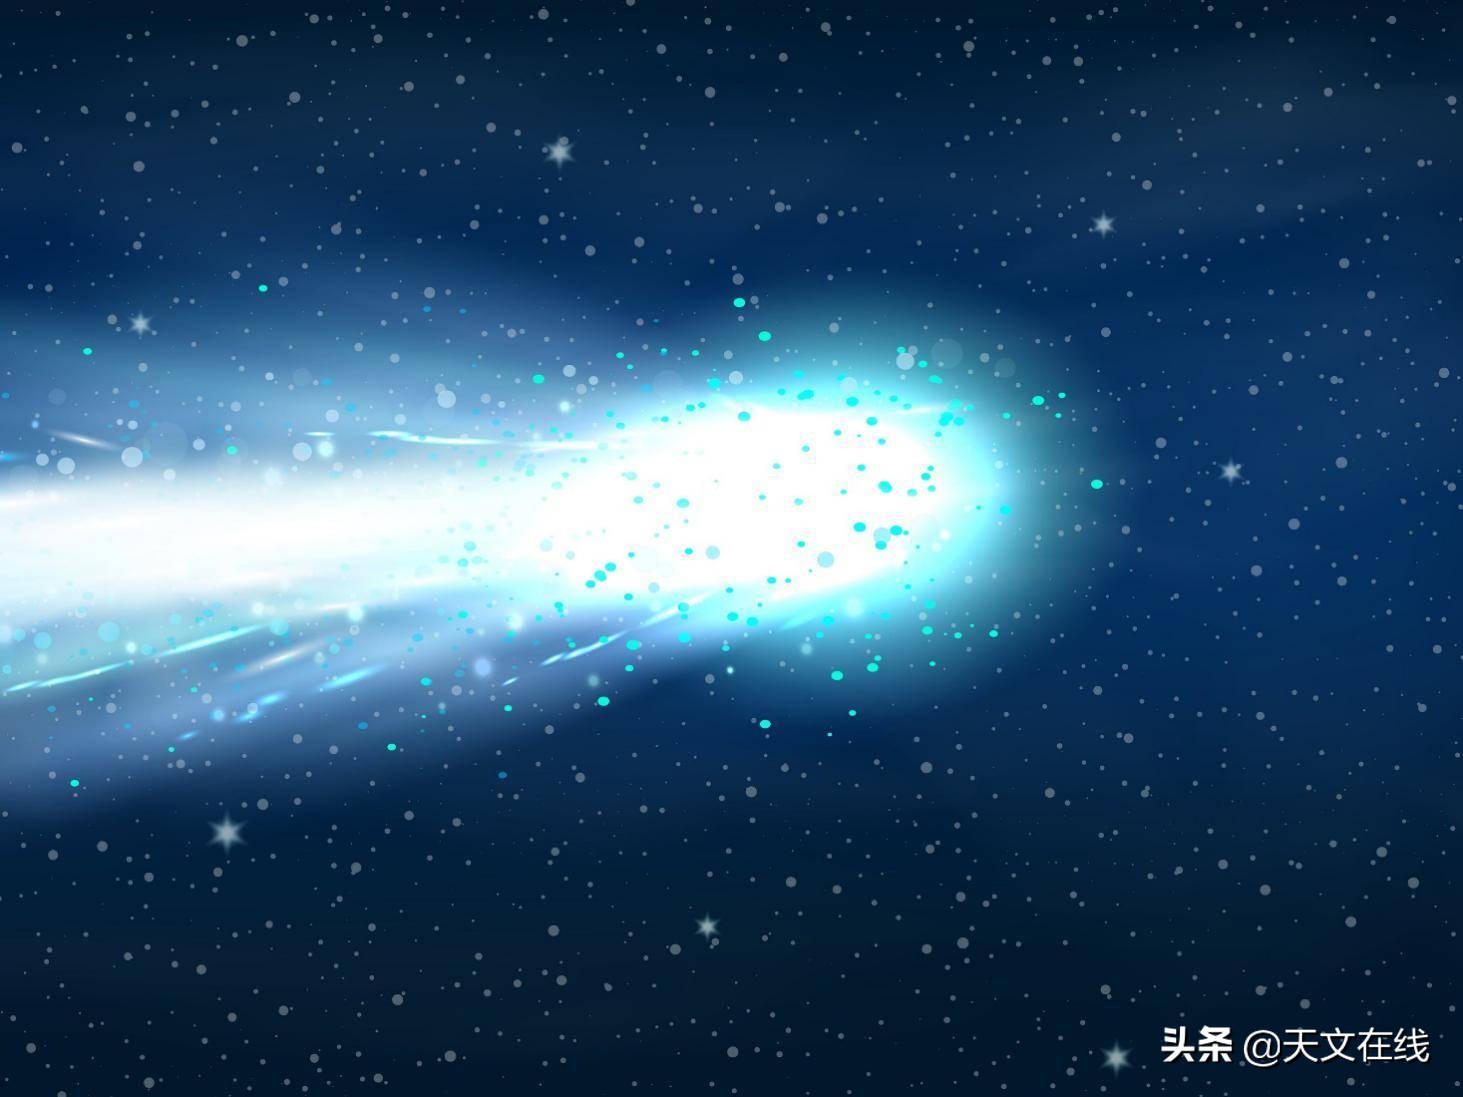 鲍里索夫彗星与行星的构成至今仍是个未解之谜